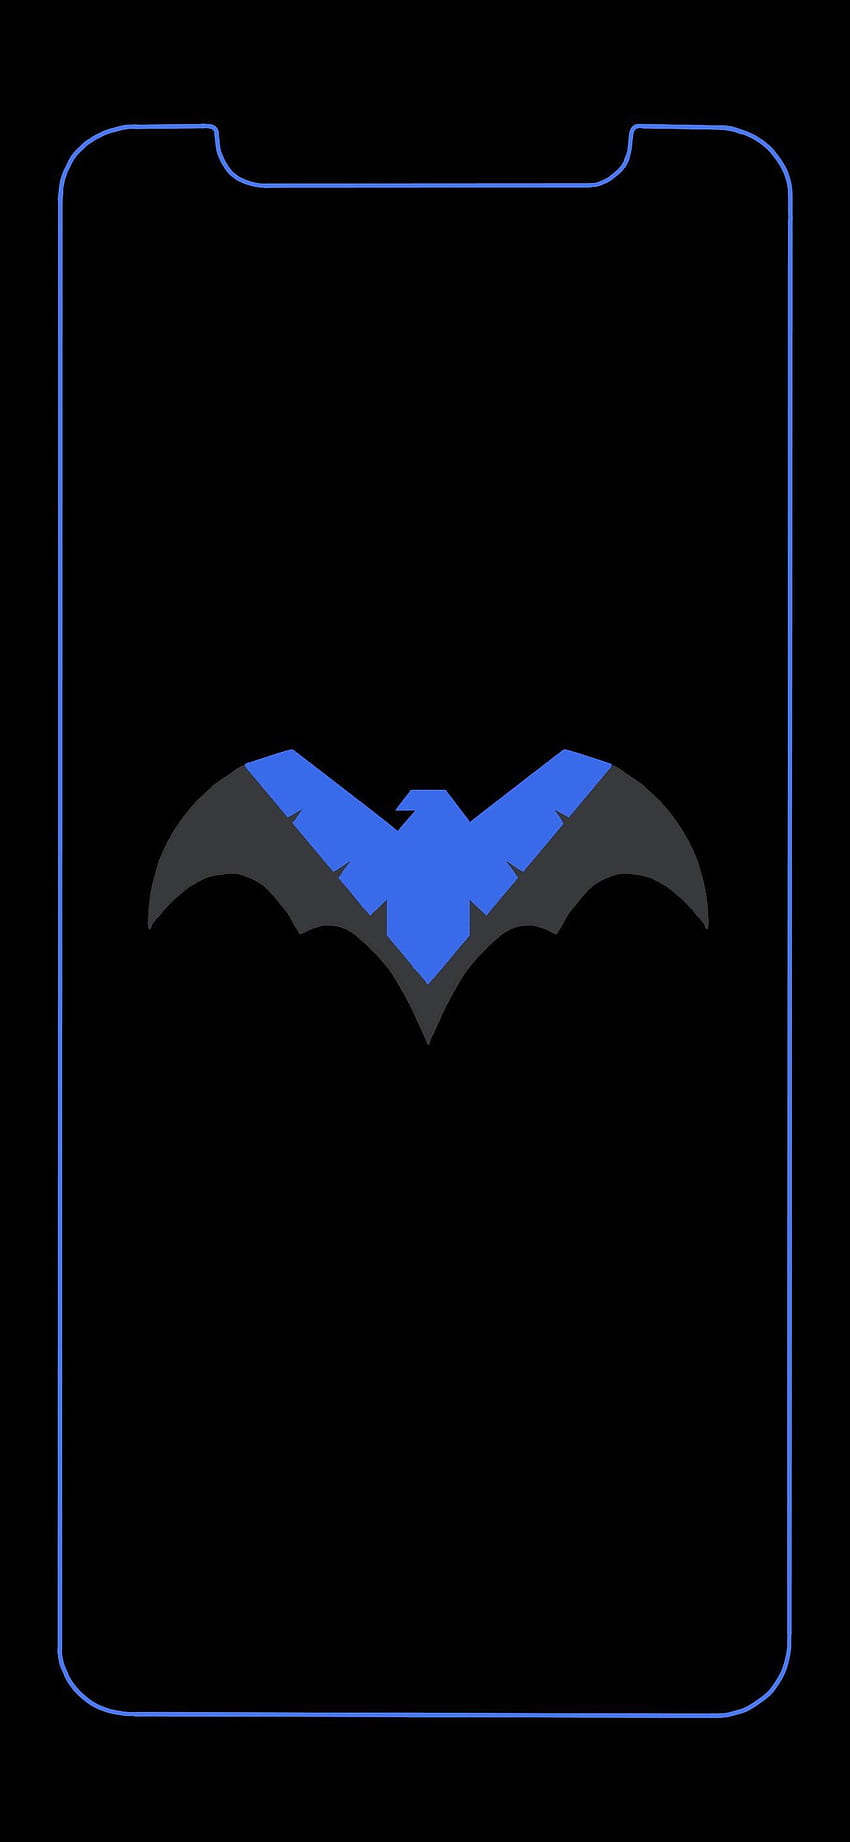 Fan Art Saya mendesain Nightwing ini untuk iPhone saya yang terakhir wallpaper ponsel HD